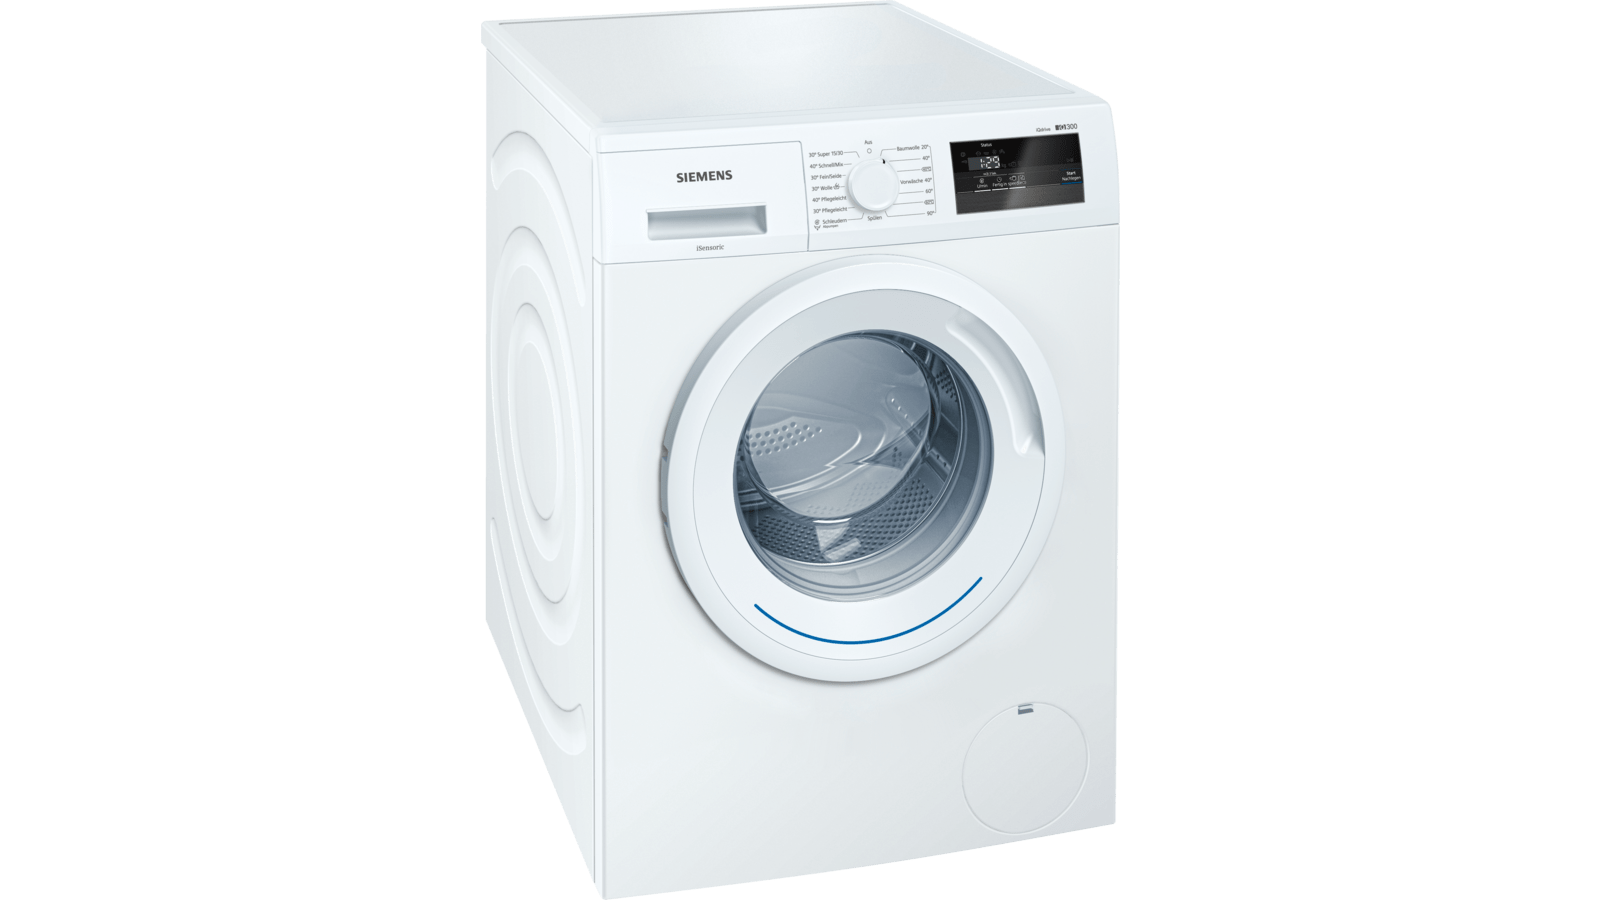 Siemens WM14N060 Waschmaschine Freistehend Weiß Neu